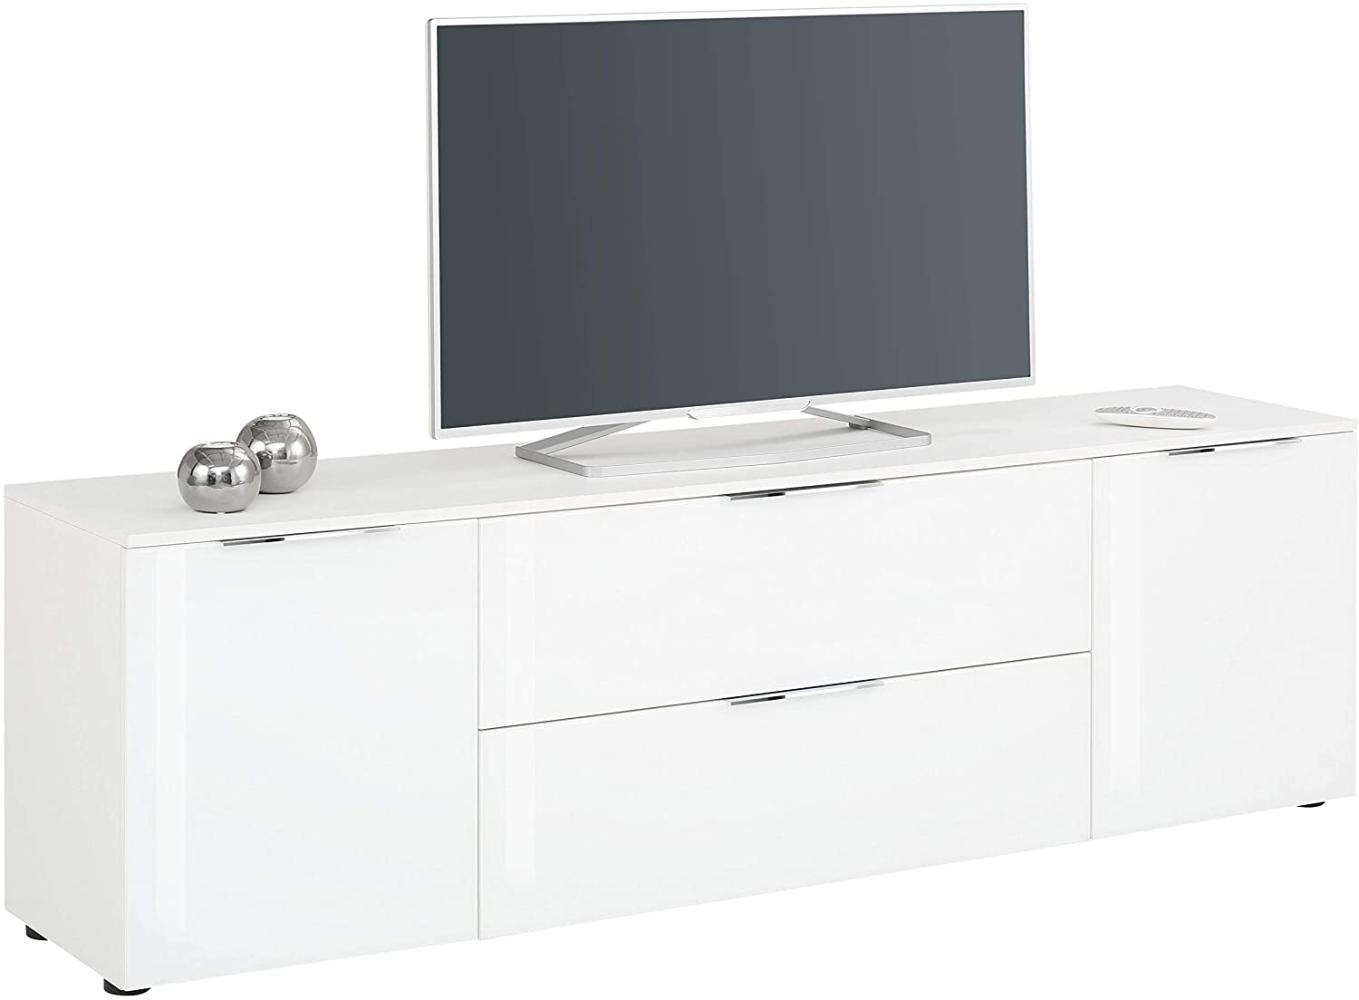 Lowboard TREND TV-Board weiß matt Front Weißglas Bild 1